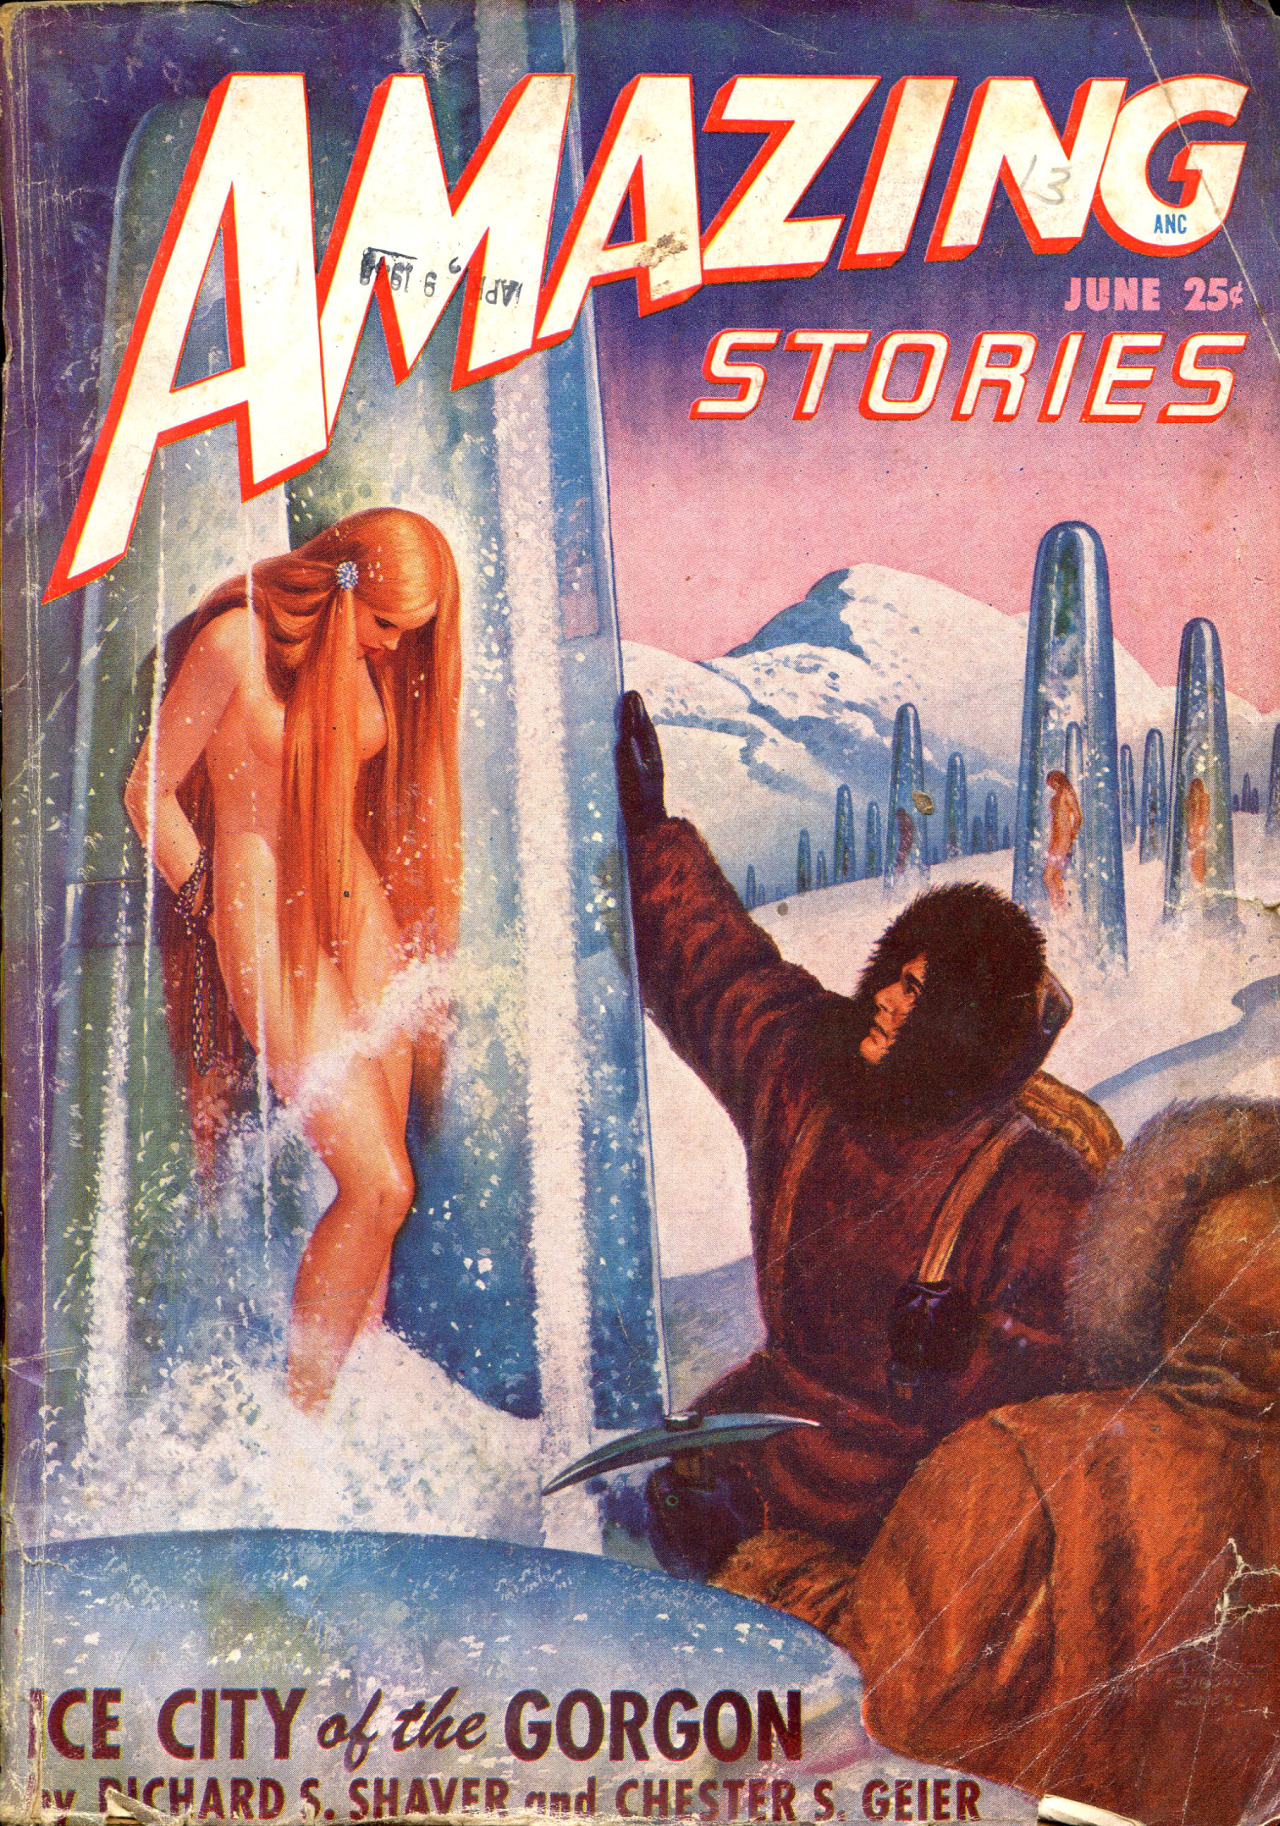 Tout en restant dans un contexte polaire, une autre illustration de R.G. Jones présentant des demoiselles en péril, voire sacrifiées. Du classique quoi ! Pour la couverture du numéro de juin 1948 du pulp Amazing Stories.